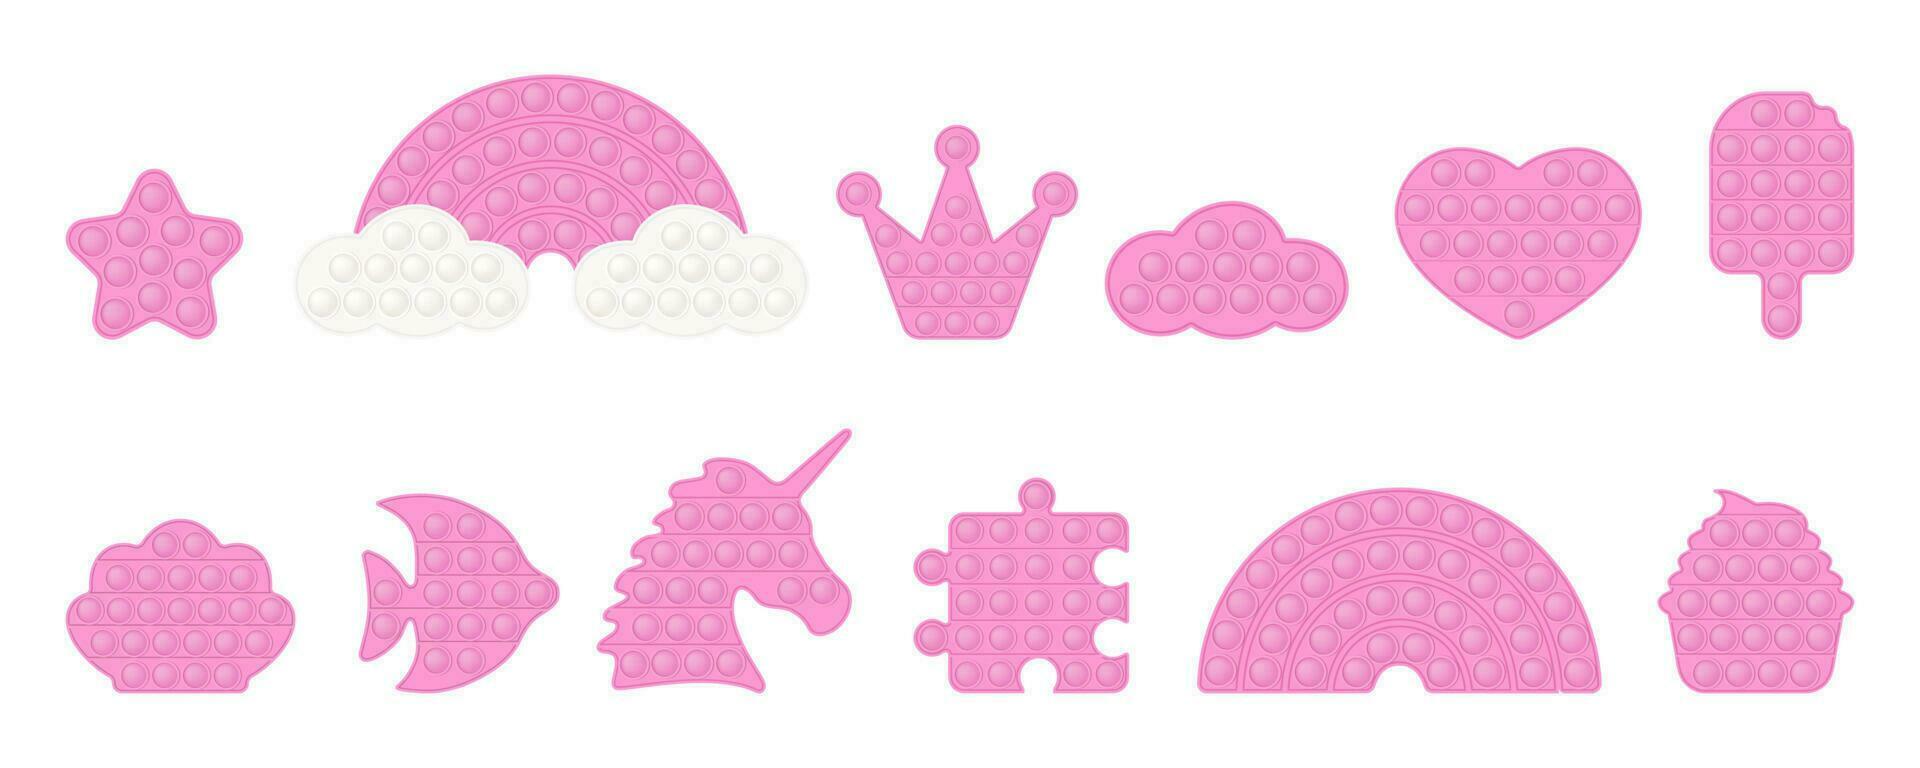 roze knallen speelgoed- vormen - verjaardag, kroon, regenboog, hart, ster, eenhoorn, taart. modieus pastel friemelen speelgoed. verslavend anti spanning speelgoed- in kleurrijk kleuren. bubbel zintuiglijk modieus speelgoed- vector